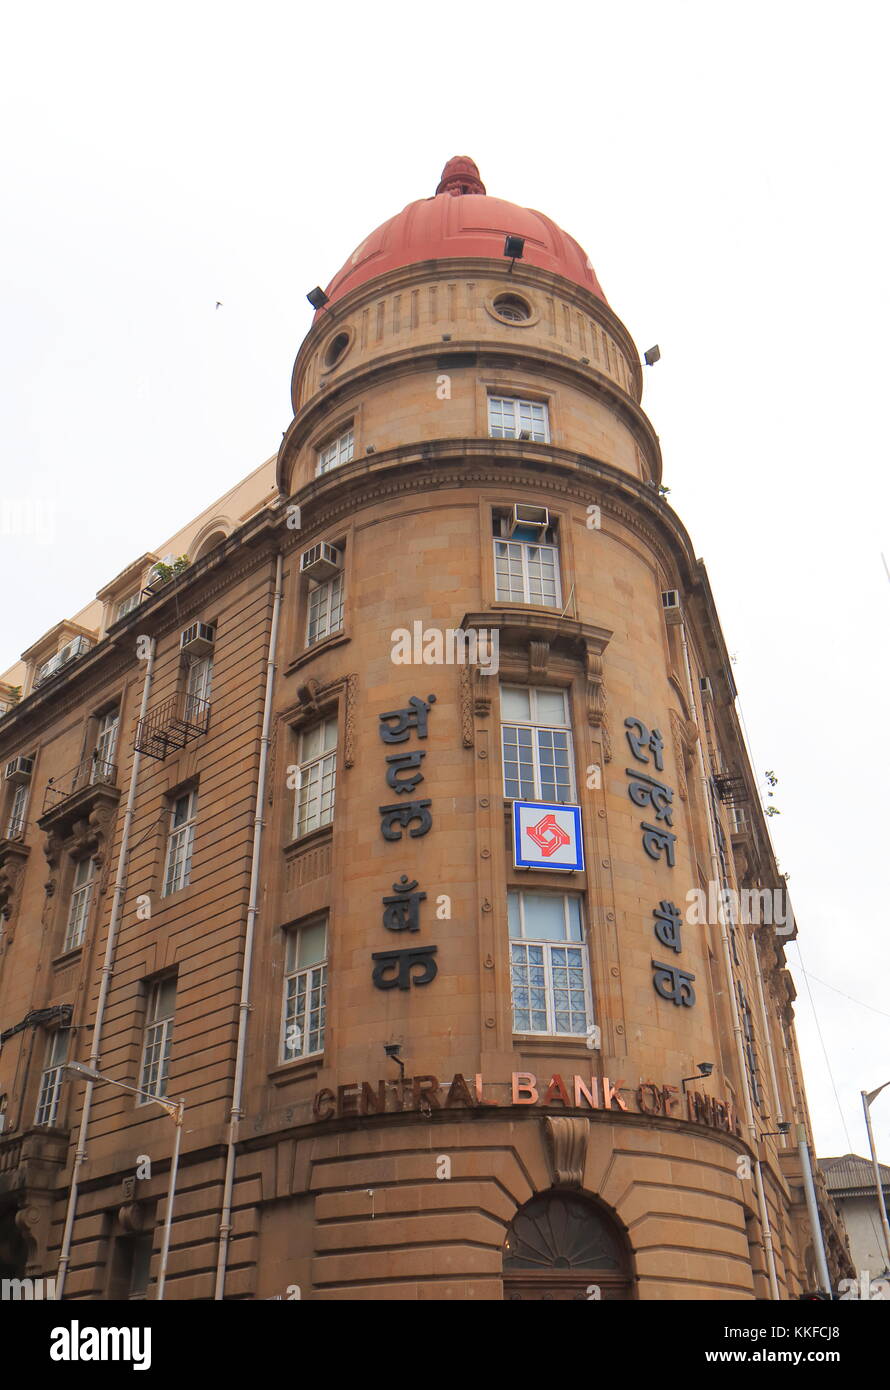 Edificio del Banco Central de la India en Mumbai, India. Banco Central de la India es uno de los más antiguos y mayores bancos comerciales de la India. Foto de stock